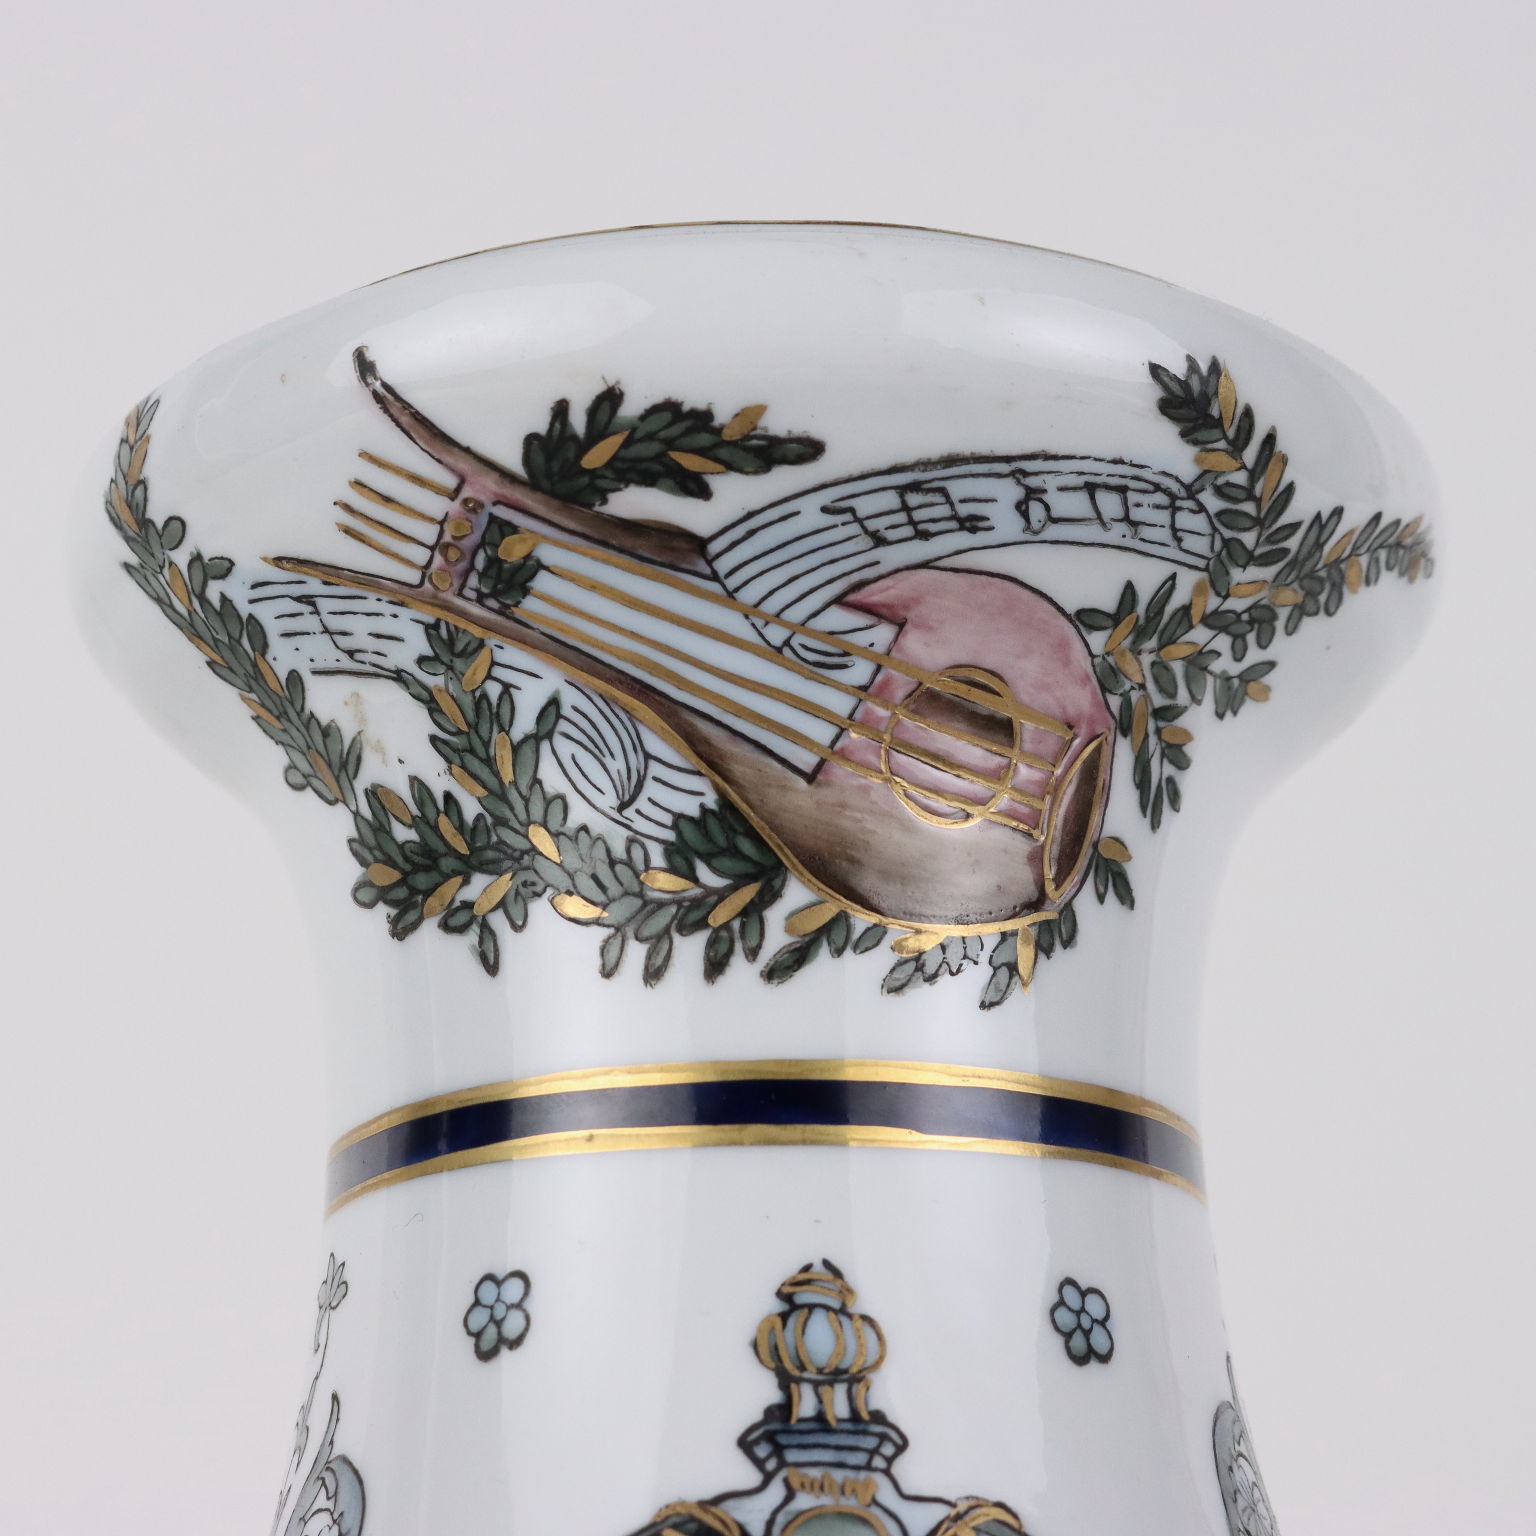 Antique Vase Neo-Renaissance Style Porcelain Paris Royal XX Century